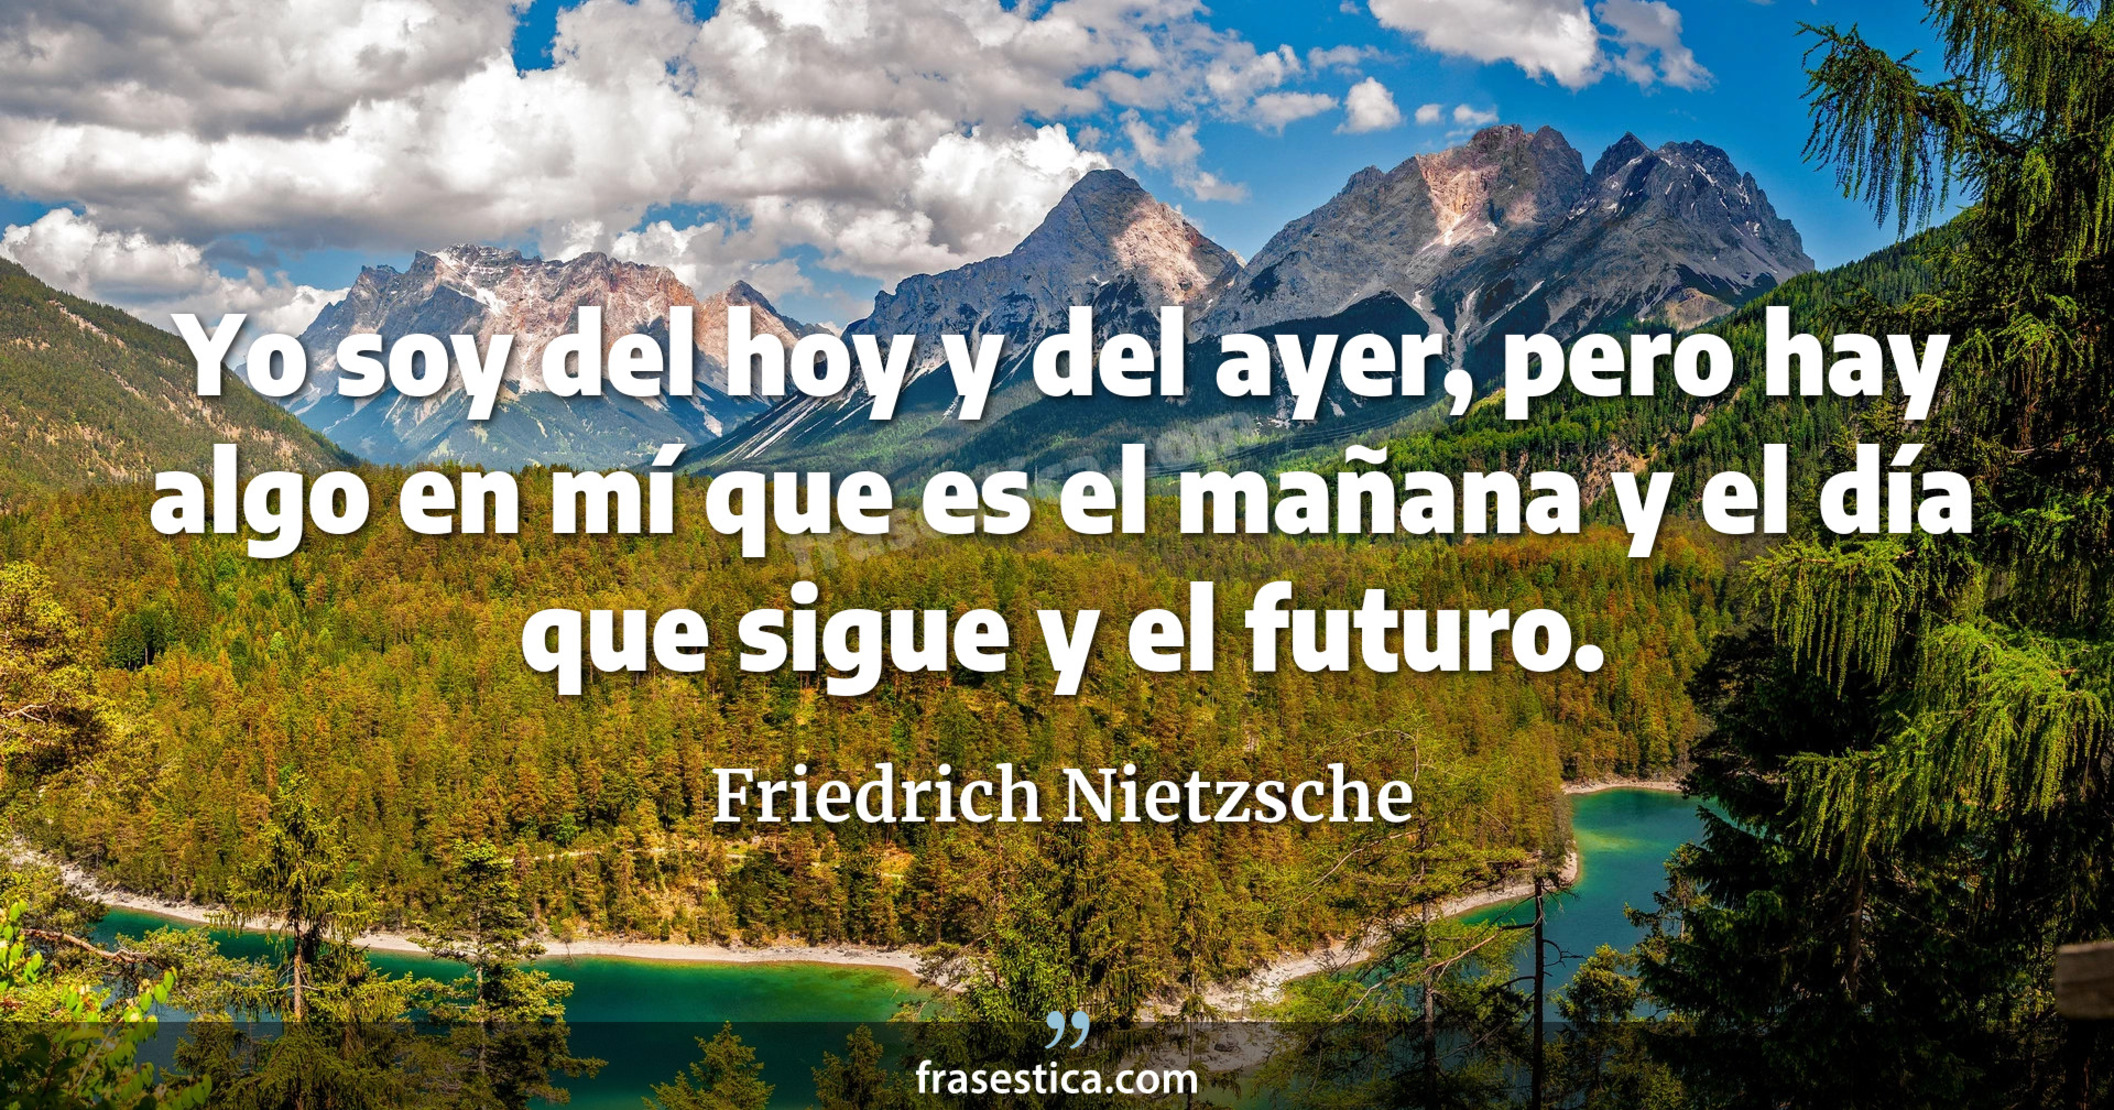 Yo soy del hoy y del ayer, pero hay algo en mí que es el mañana y el día que sigue y el futuro. - Friedrich Nietzsche